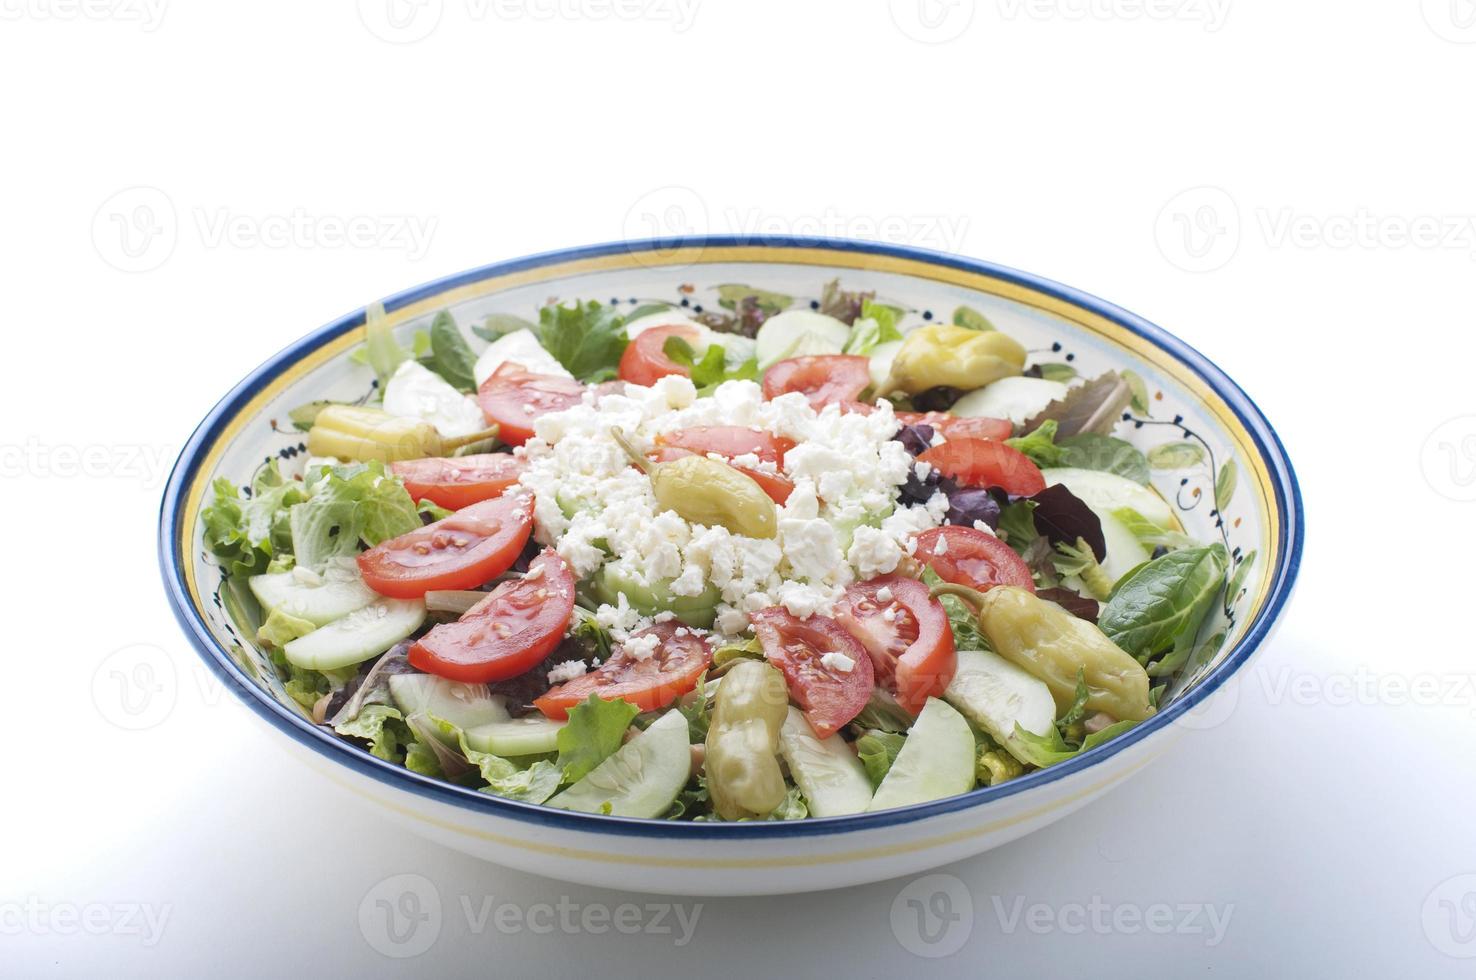 skål med grekisk sallad foto